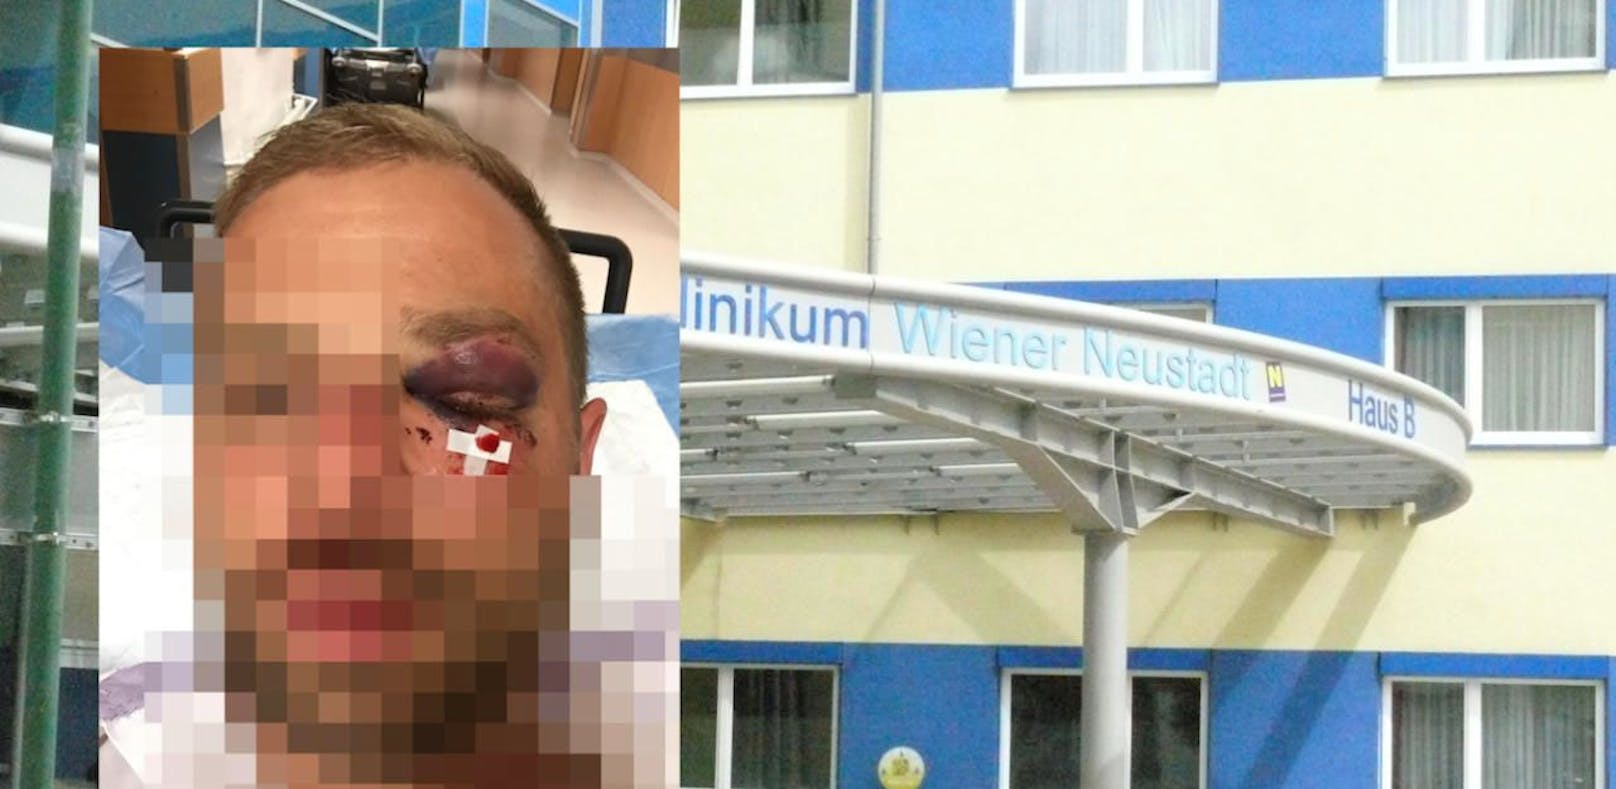 Beachparty: Beamter von Duo ins Spital geprügelt